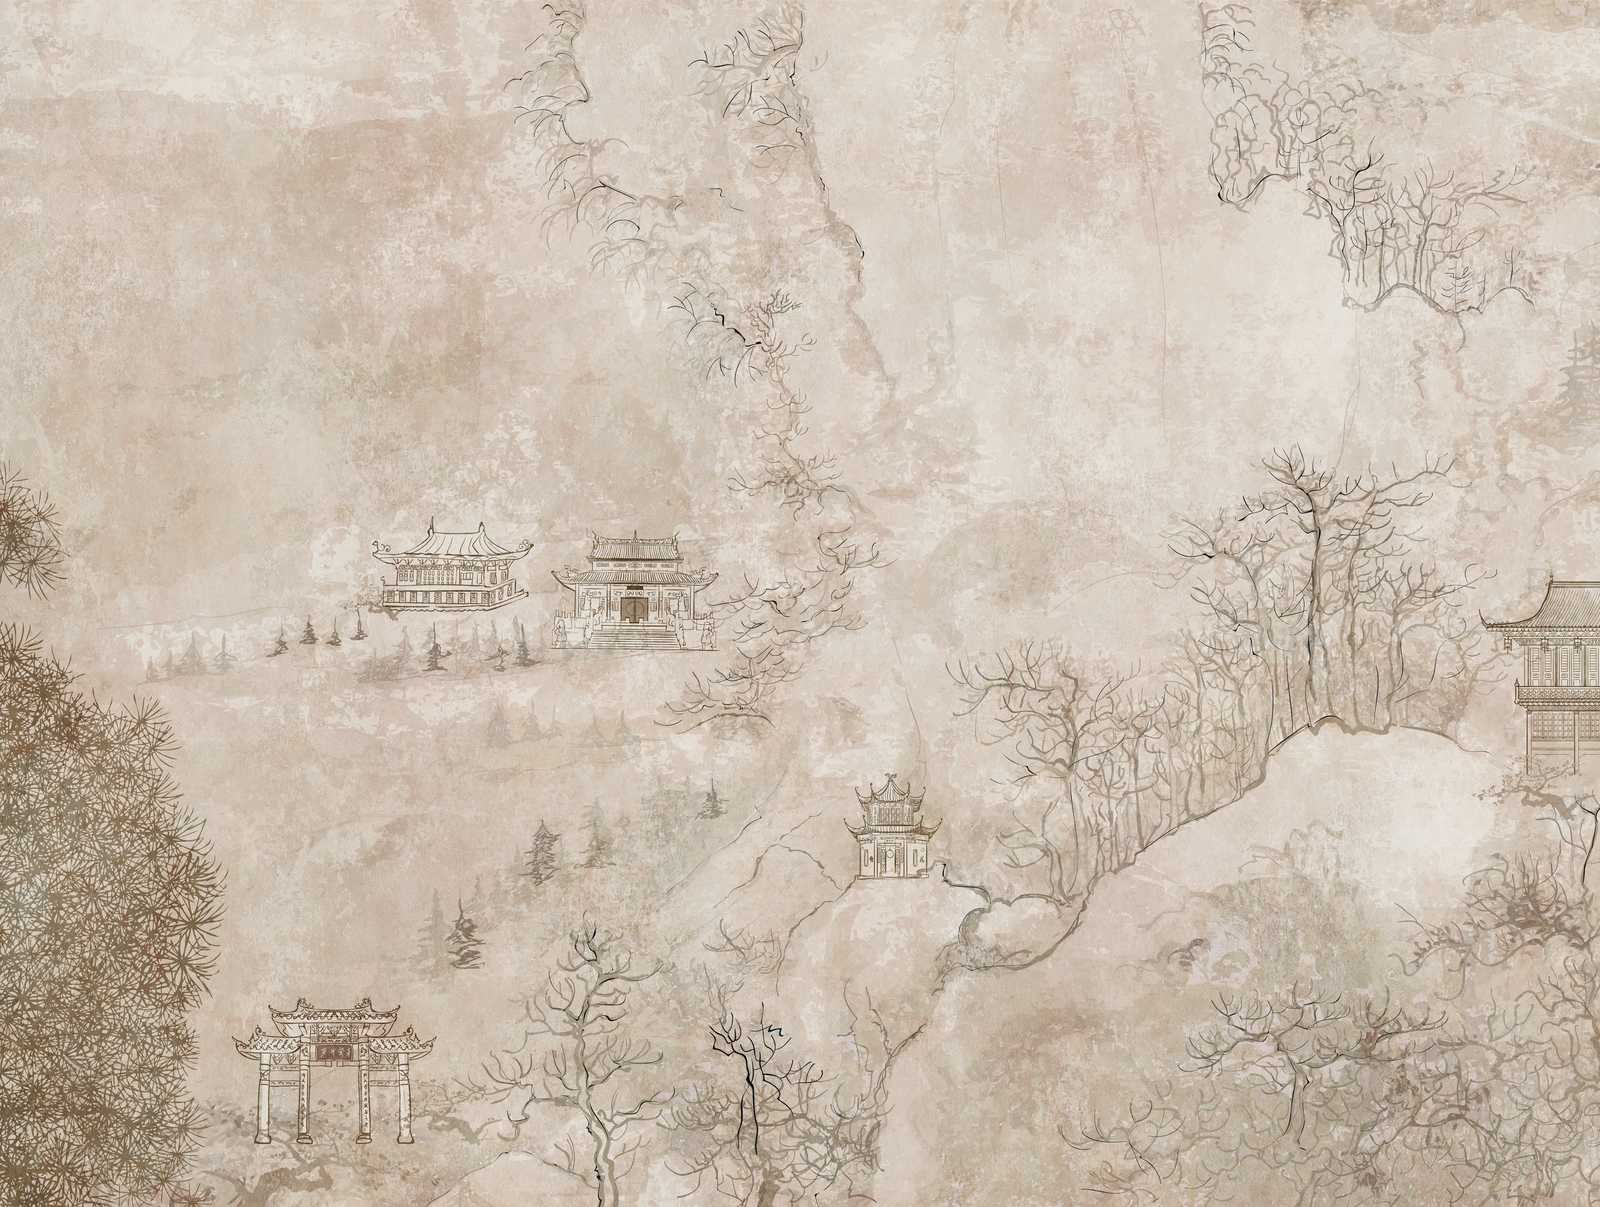             Tapeten-Neuheit – Motivtapete Asien Retro Design mit Landschaft und Pagoden
        